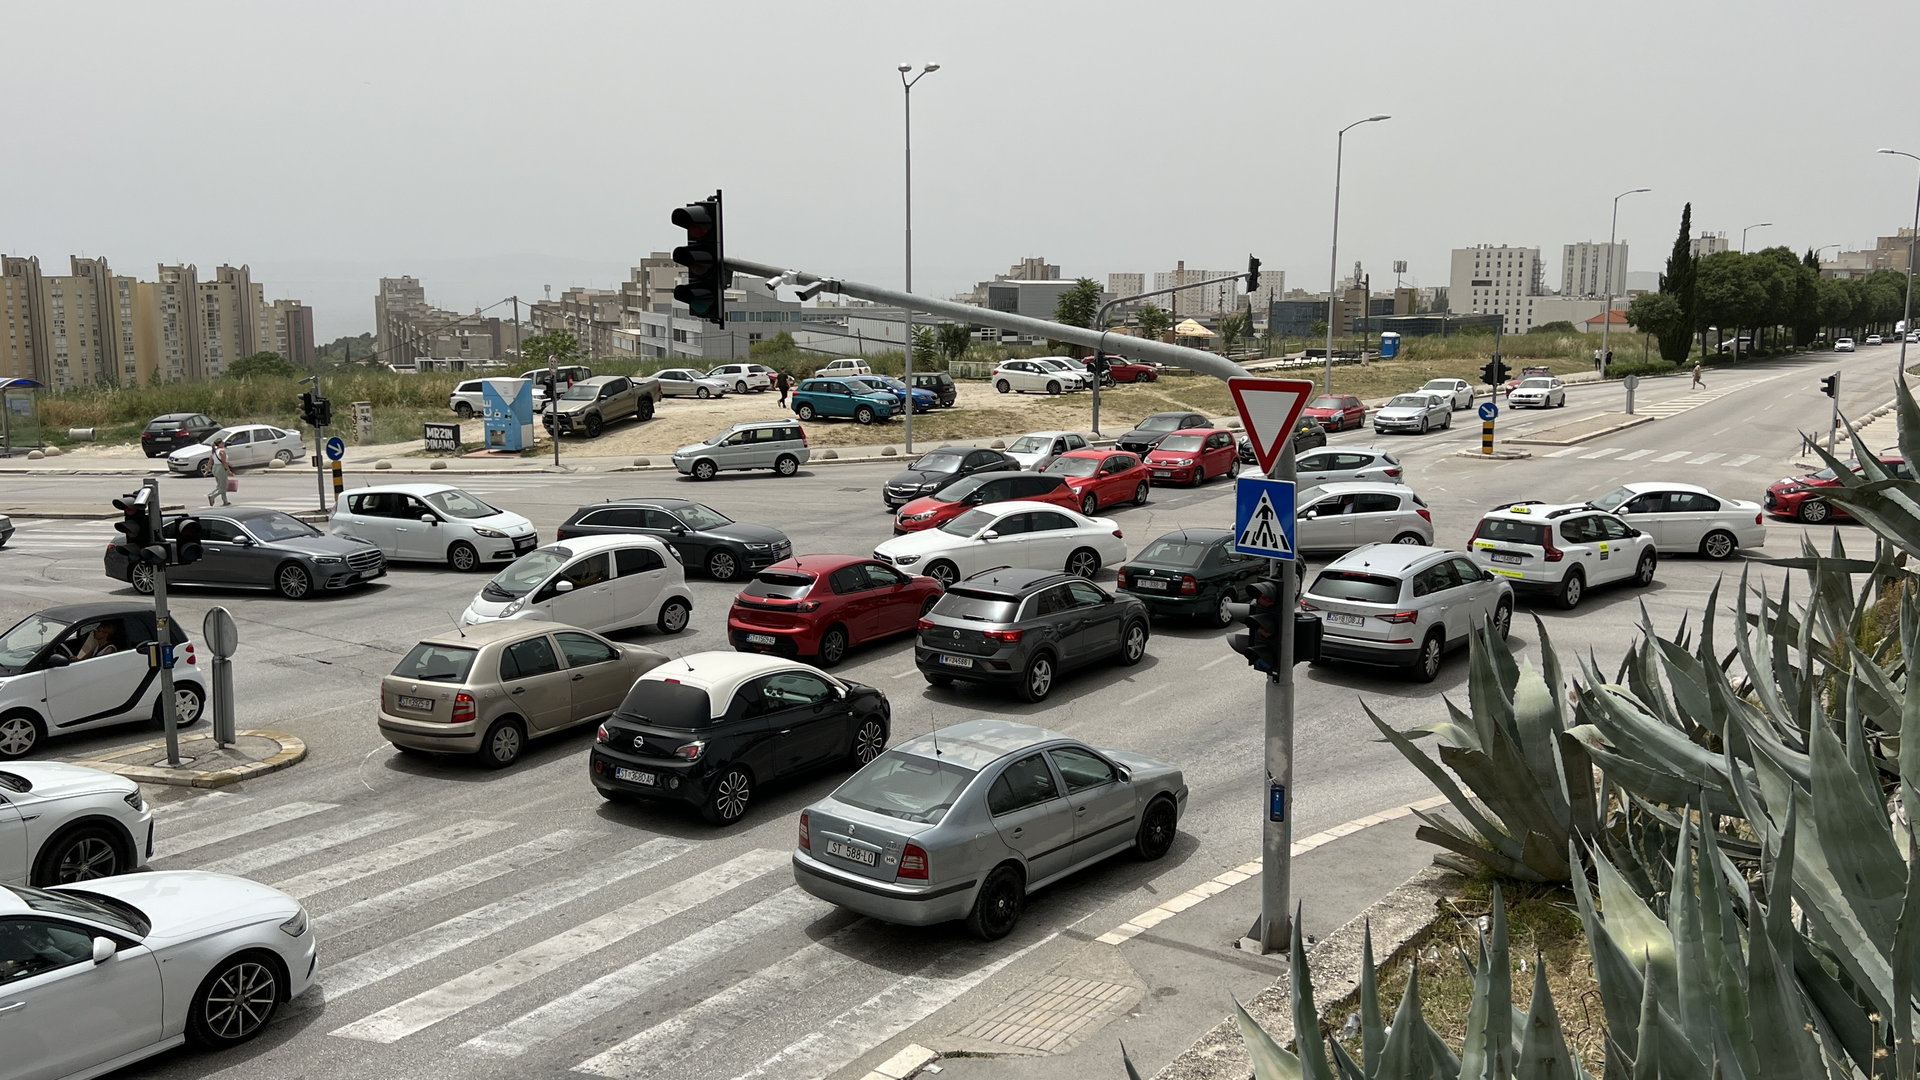 Apsolutni kolaps u prometu nastao je danas u Splitu nakon što je iznenandno nestalo struje u gradu, ali i diljem Dalmacije.